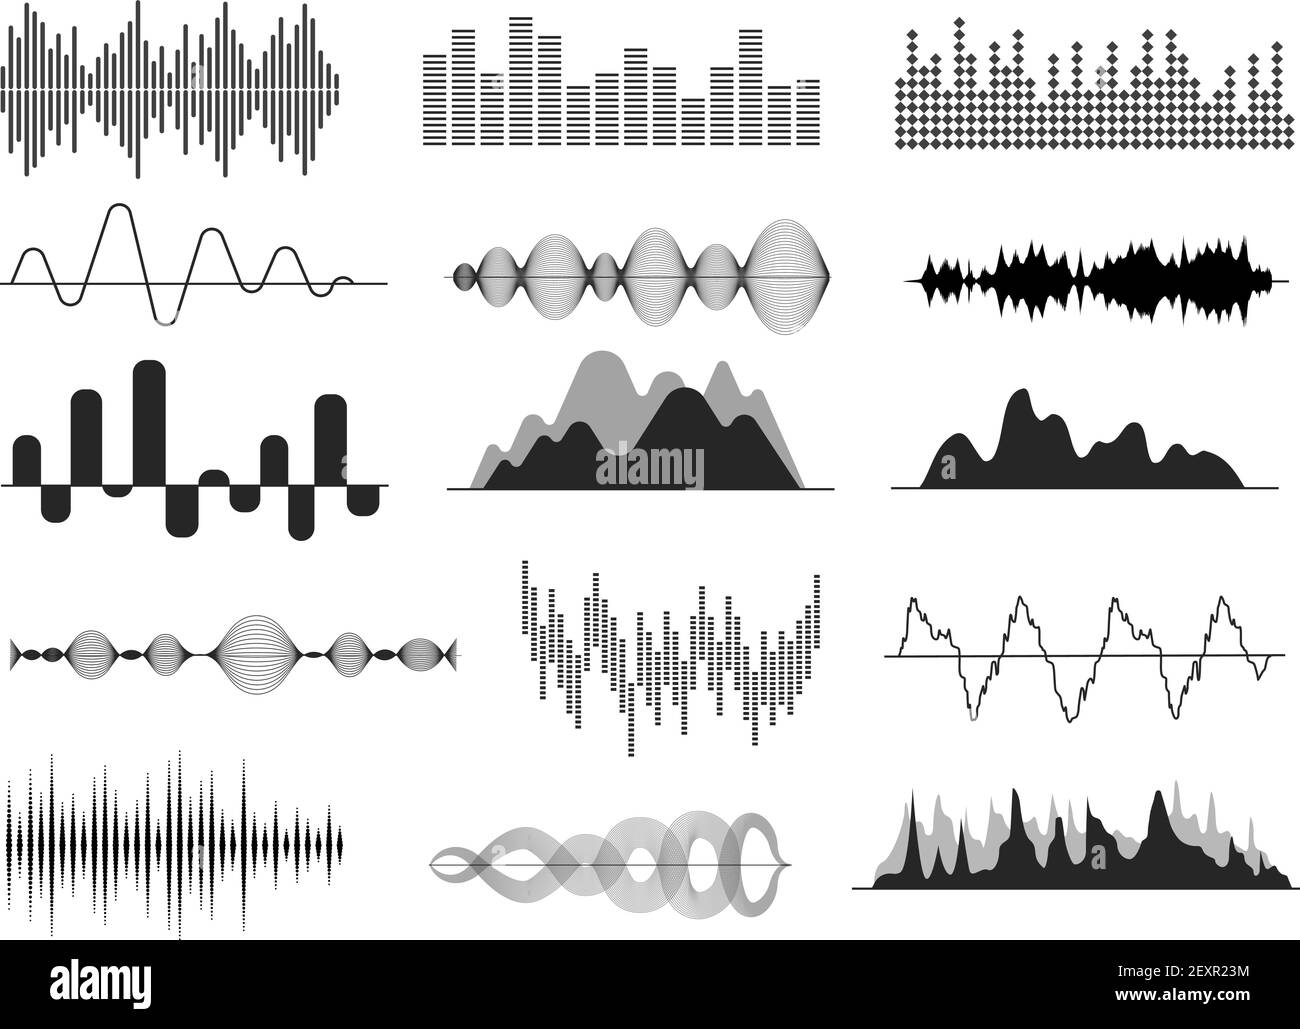 Schallwellen. Musikwelle, Audiofrequenzkurve. Symbole für Radiostimme und Soundtrack. Soundwave abstrakte Signale isoliert Vektor-Set Stock Vektor